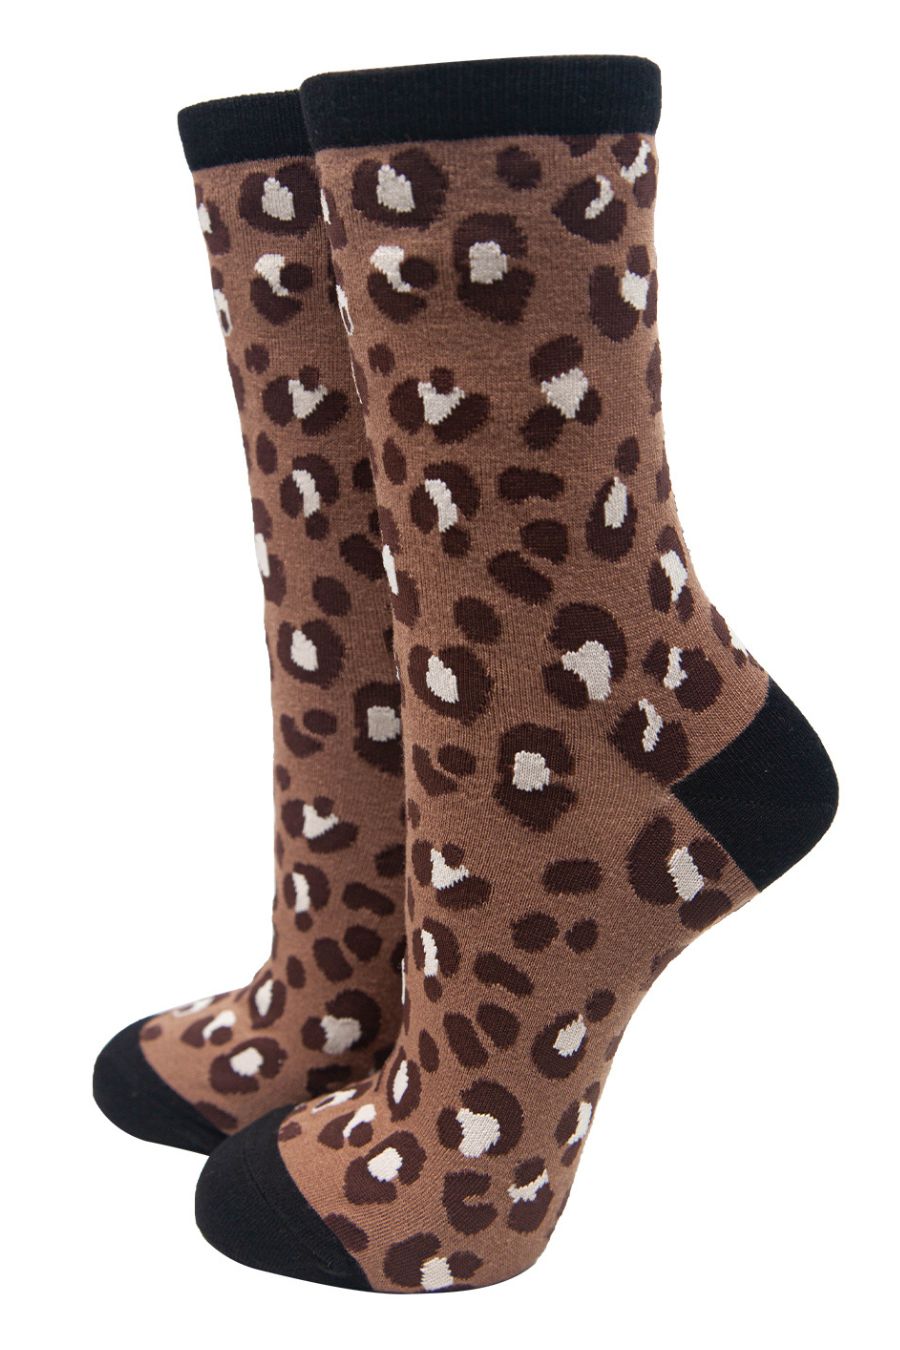 brown cheetah animal print ankle socks